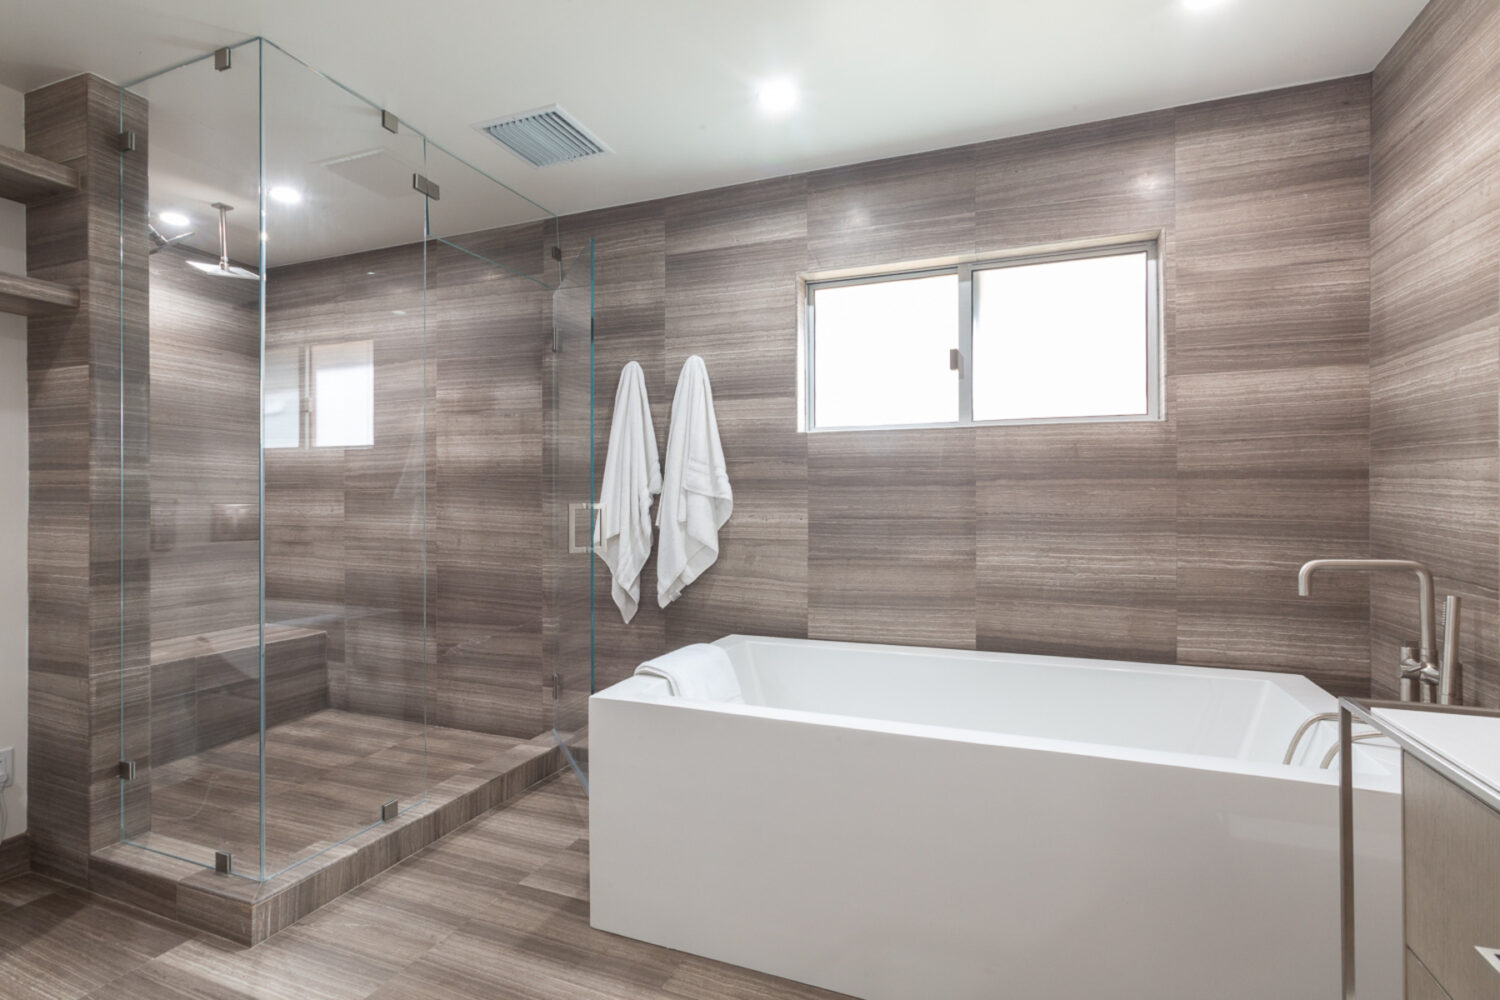 Modern bathroom remodel with sandstone slab design.